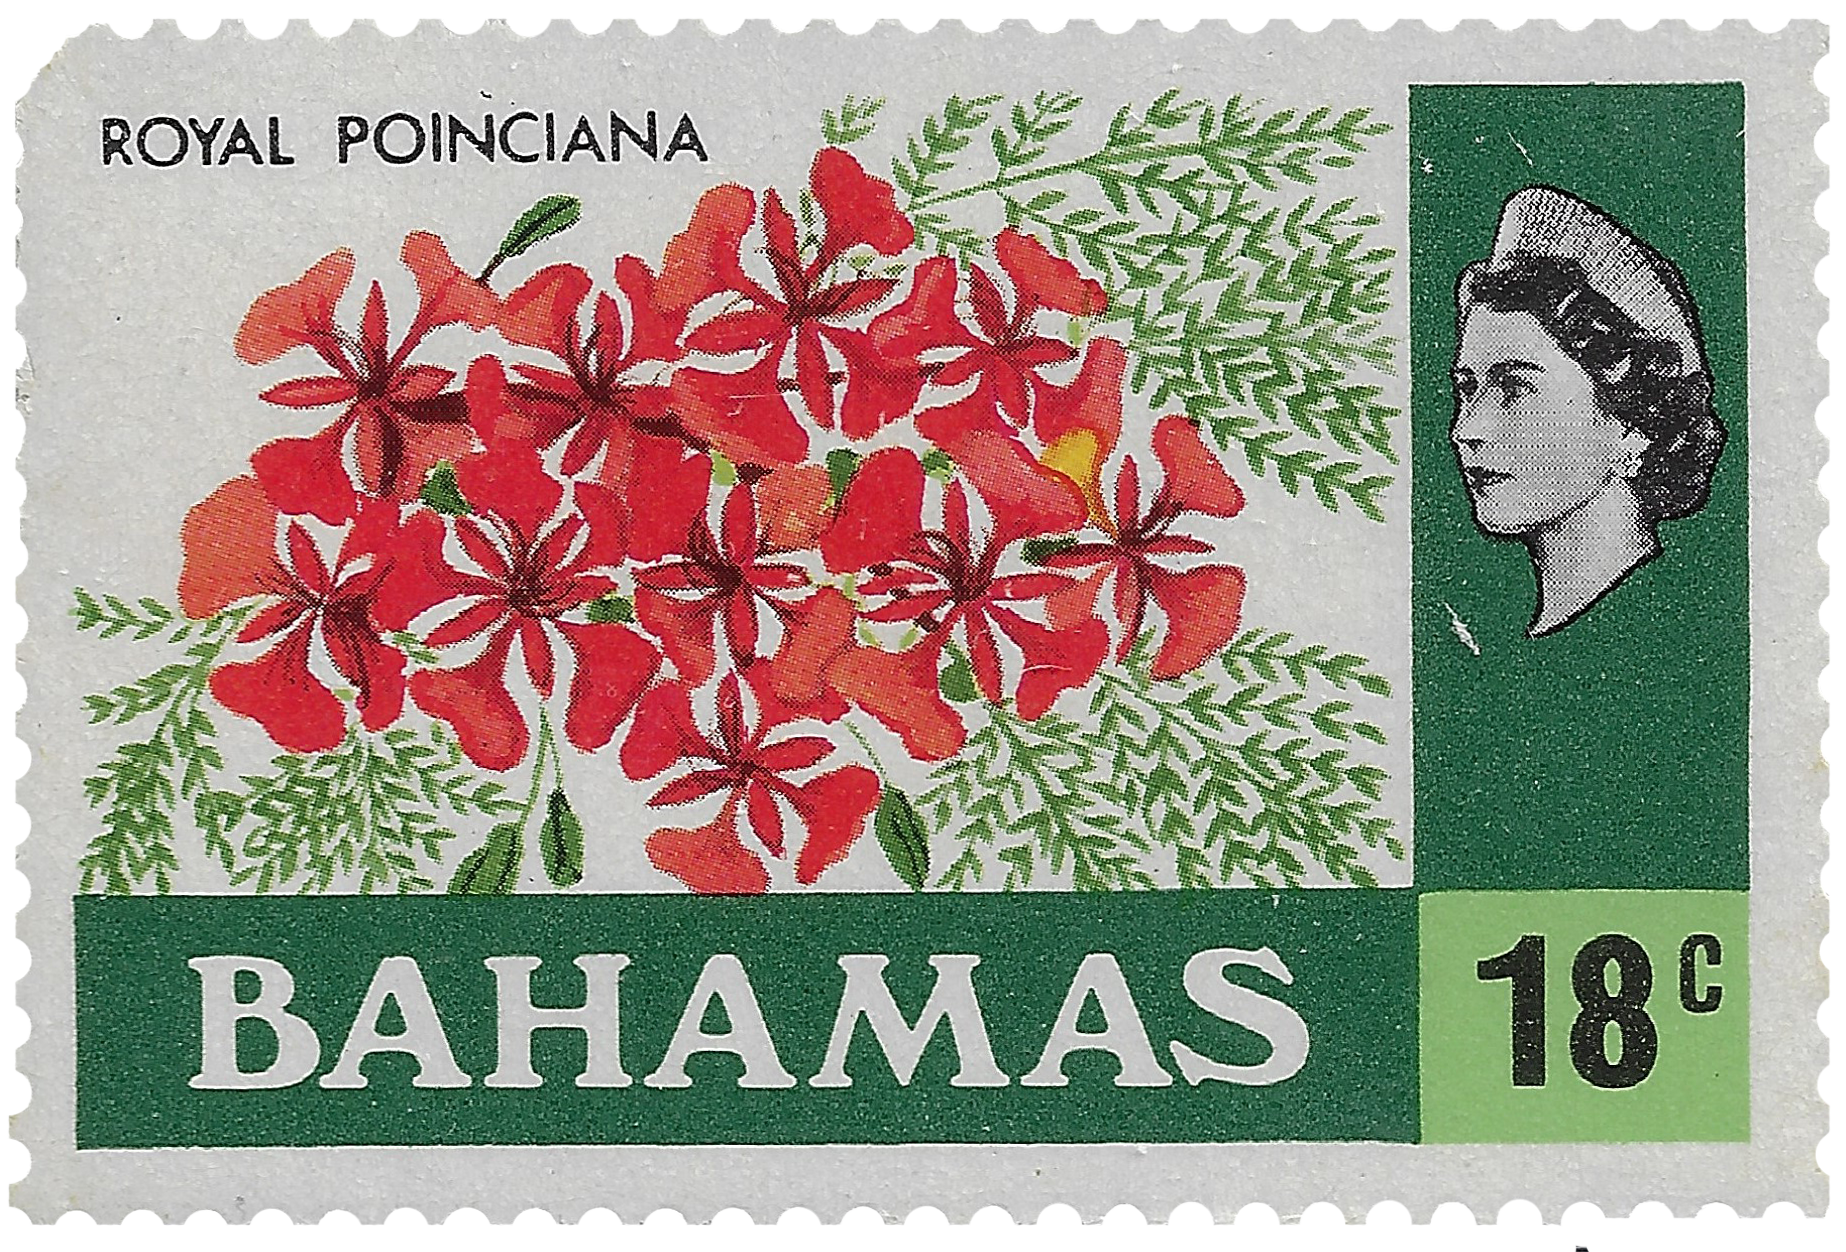 18c 1971, Royal Poinciana